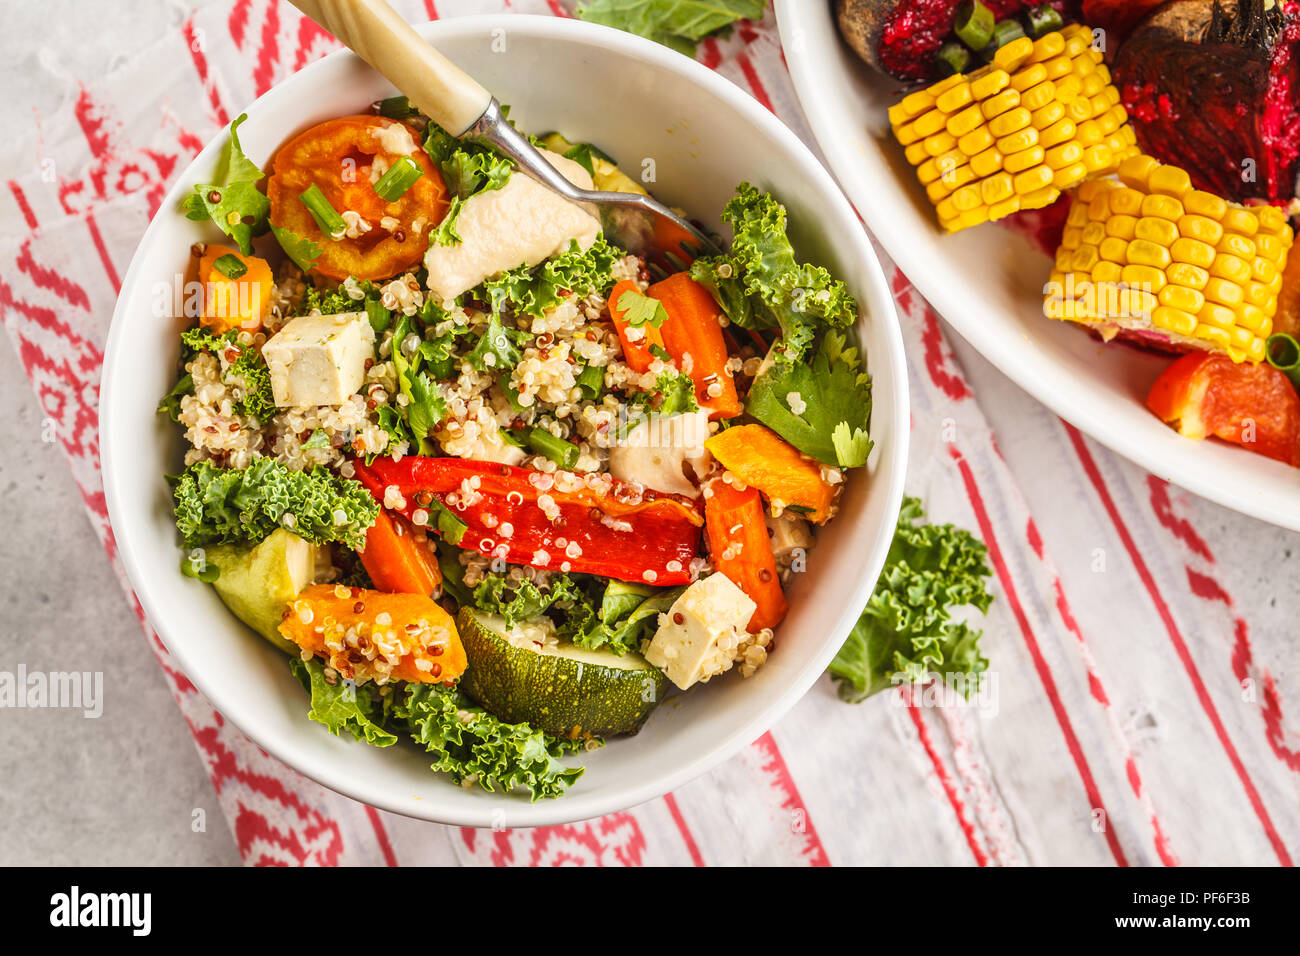 Végétalien sain avec salade de légumes cuits, le quinoa et le chou vert sur fond blanc. Concept de l'alimentation propre. Banque D'Images